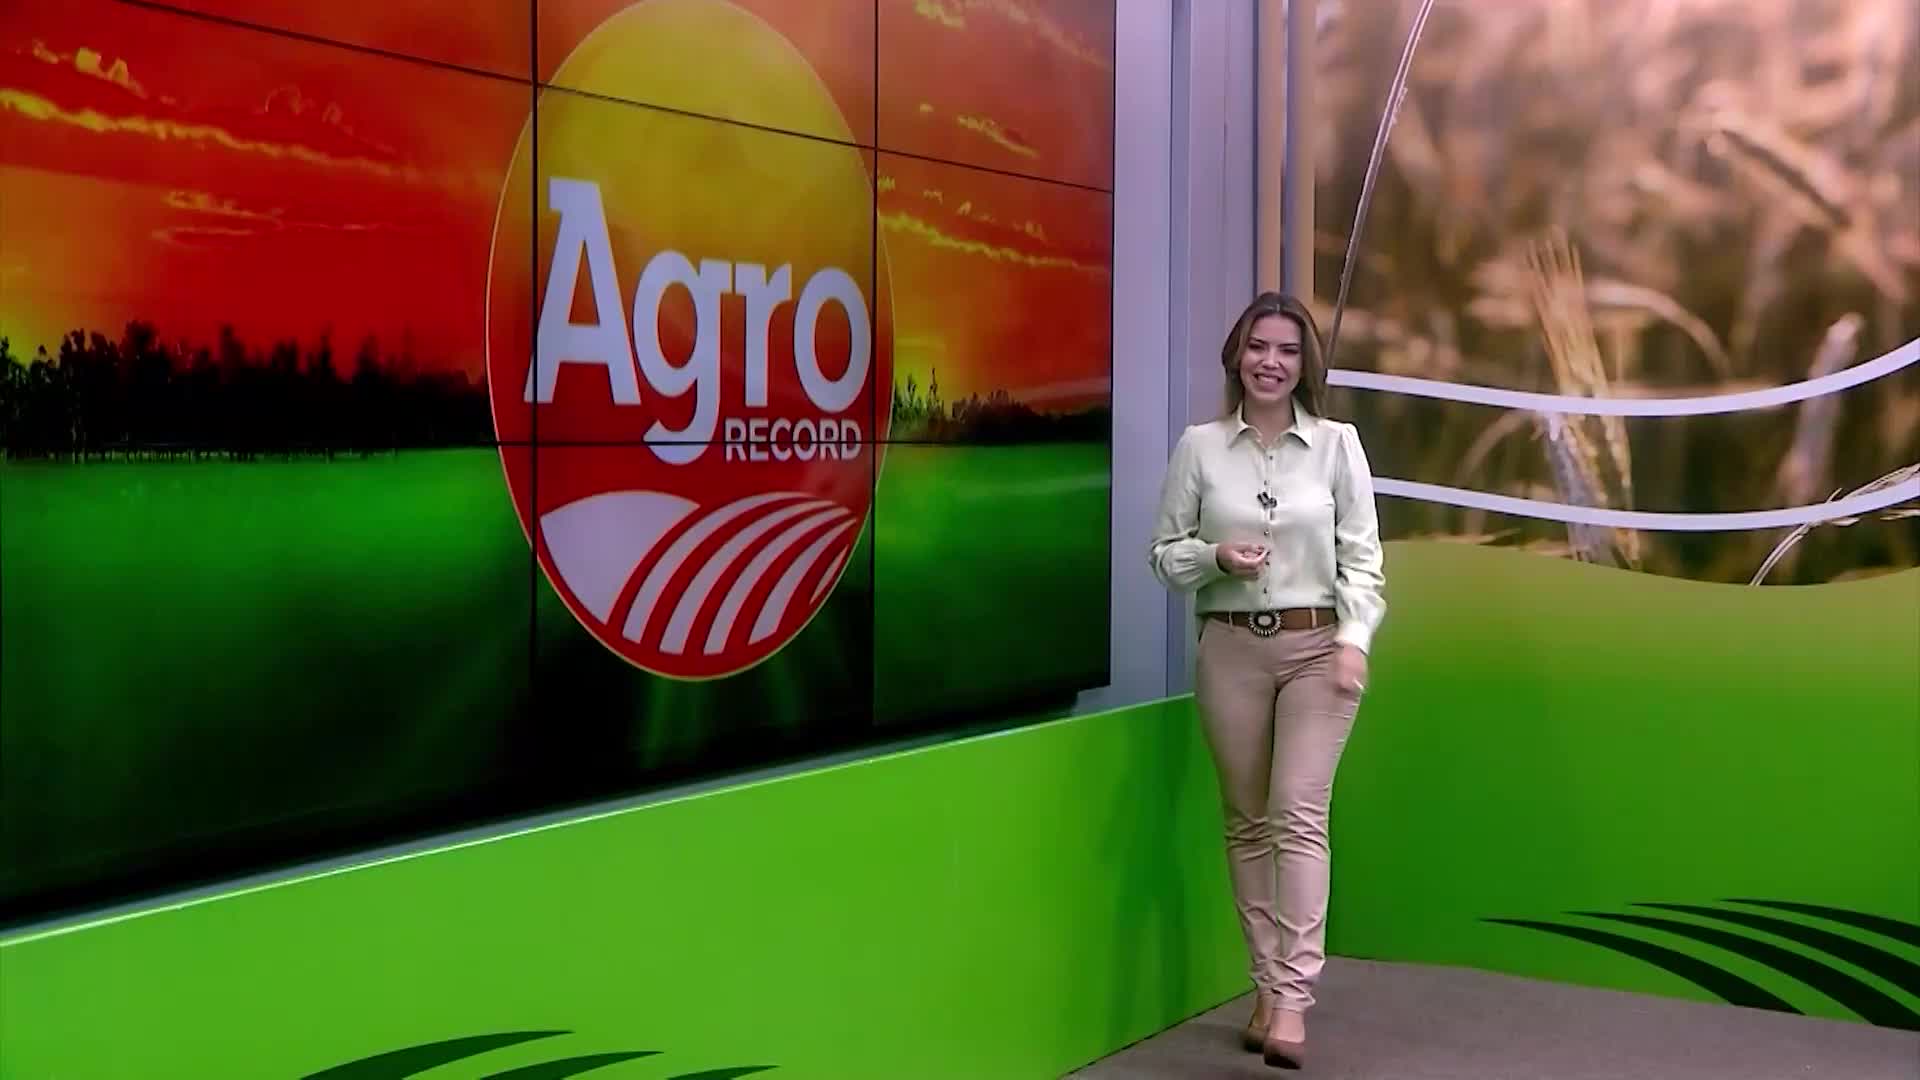 Vídeo: Veja a íntegra do Agro Record deste domingo (20)